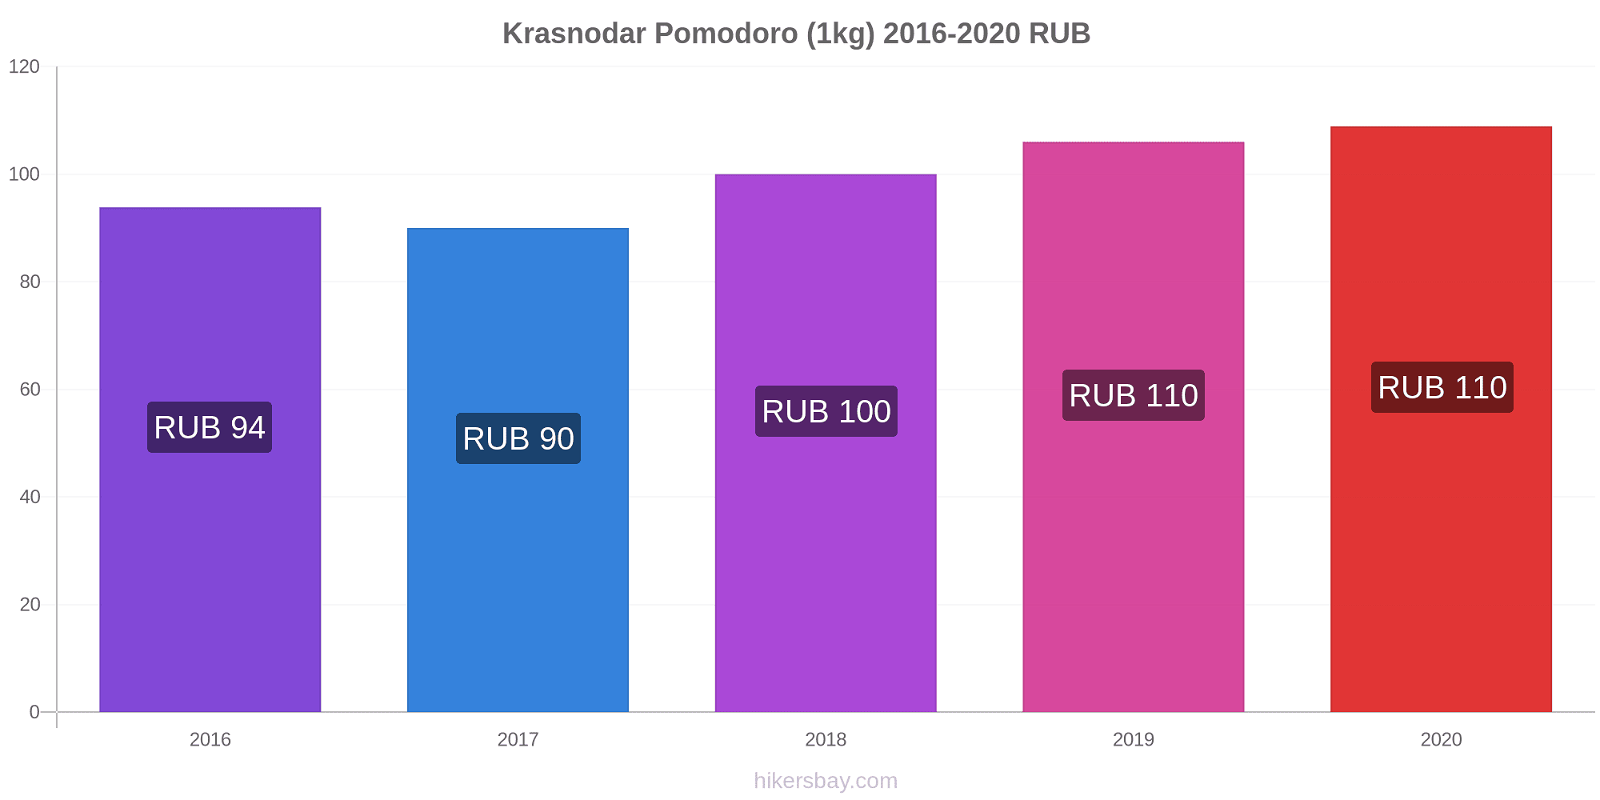 Krasnodar variazioni di prezzo Pomodoro (1kg) hikersbay.com